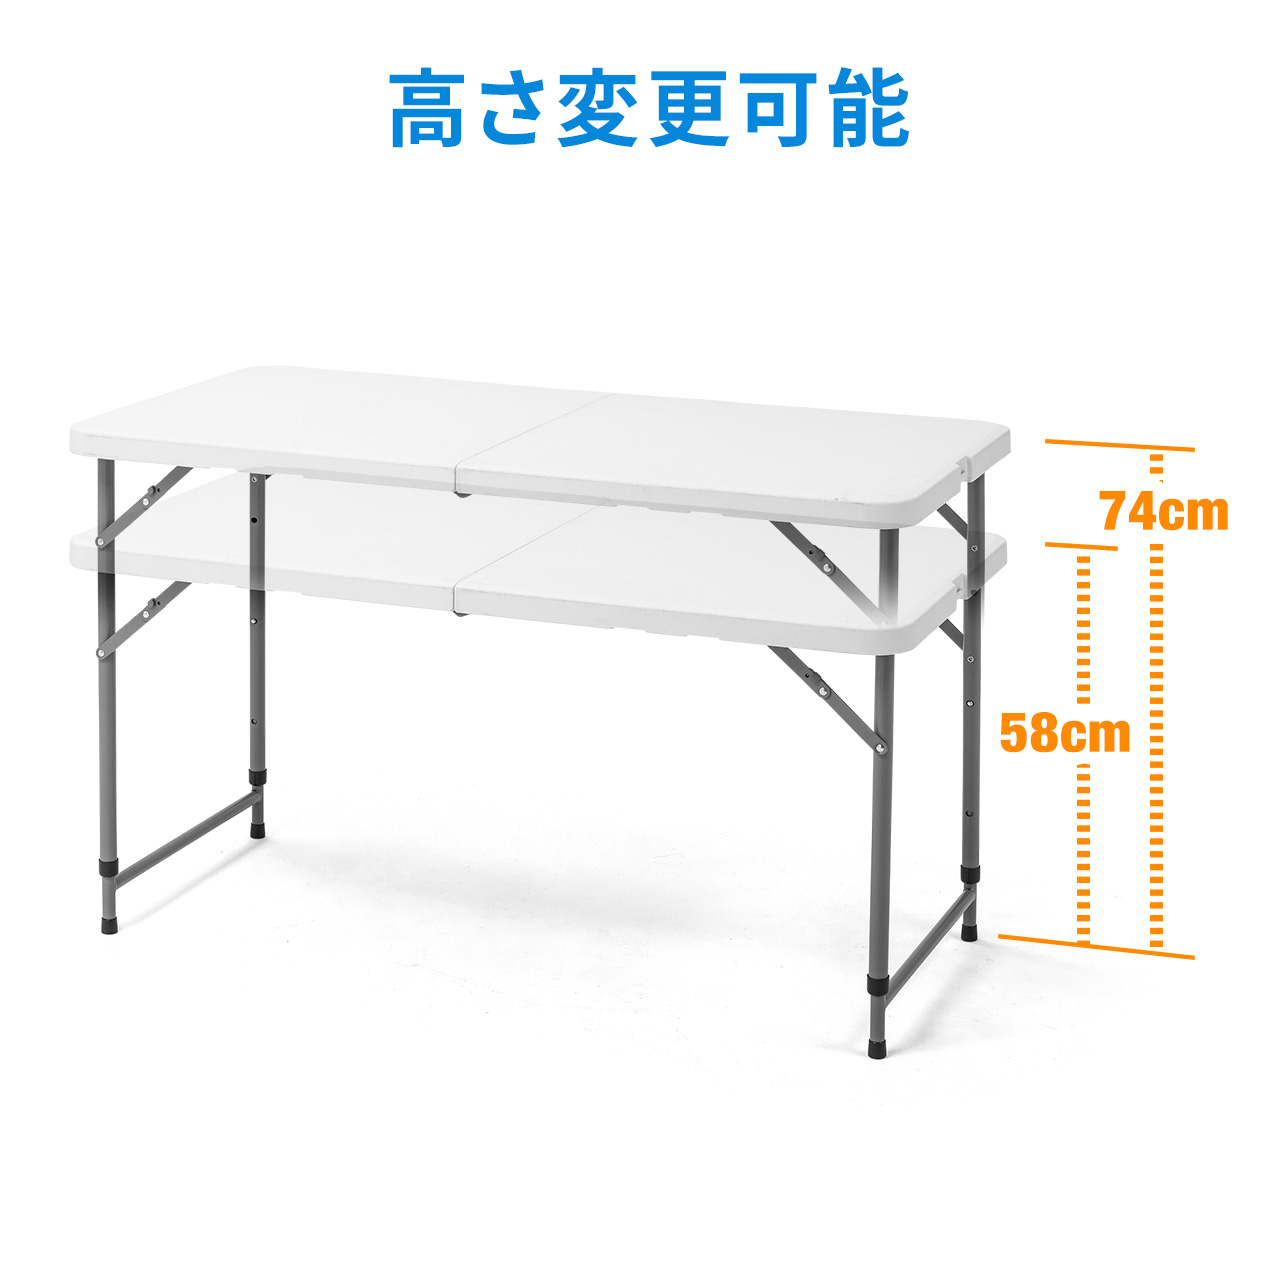 会議テーブル 折りたたみテーブル 省スペース W122cm D61cm 樹脂天板 高さ変更 簡単組立 持ち運び 取っ手付き ホワイト 100-FD015W